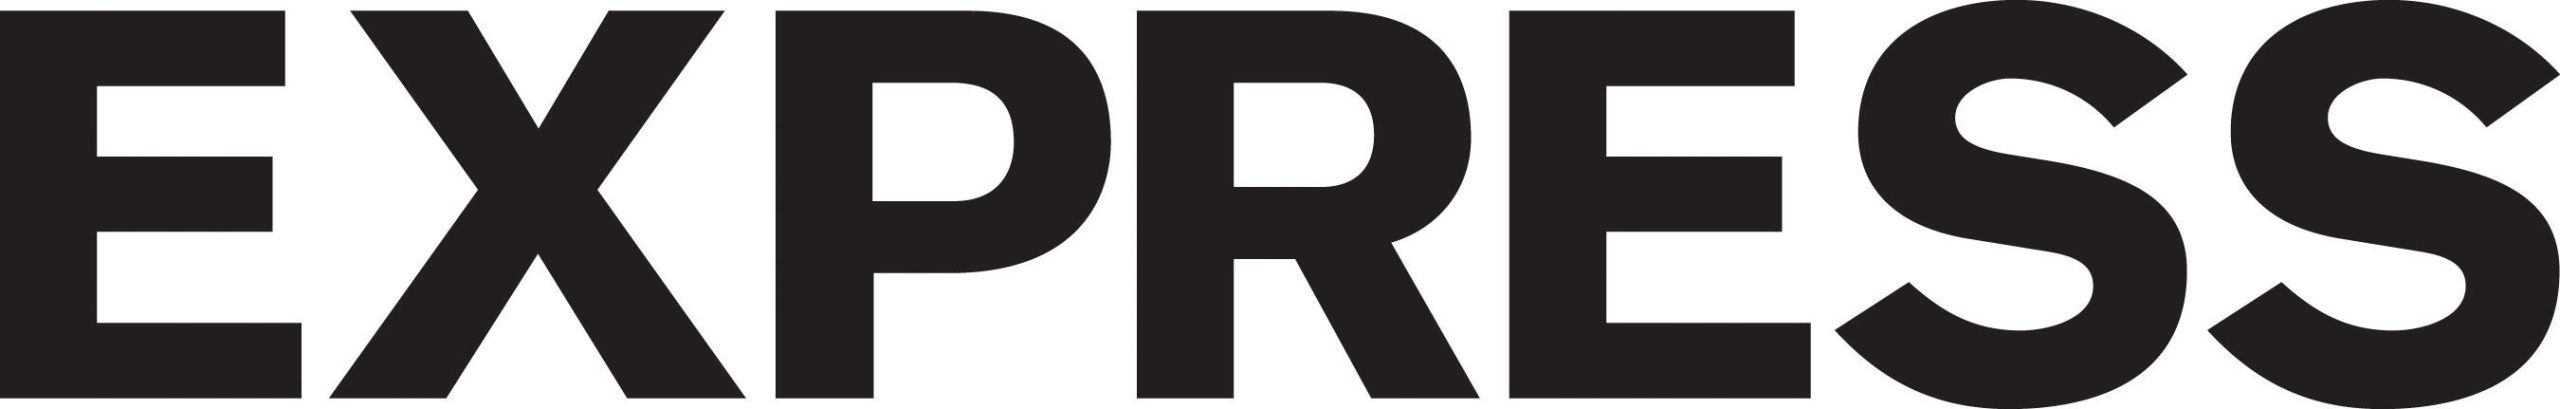 logotipo expreso